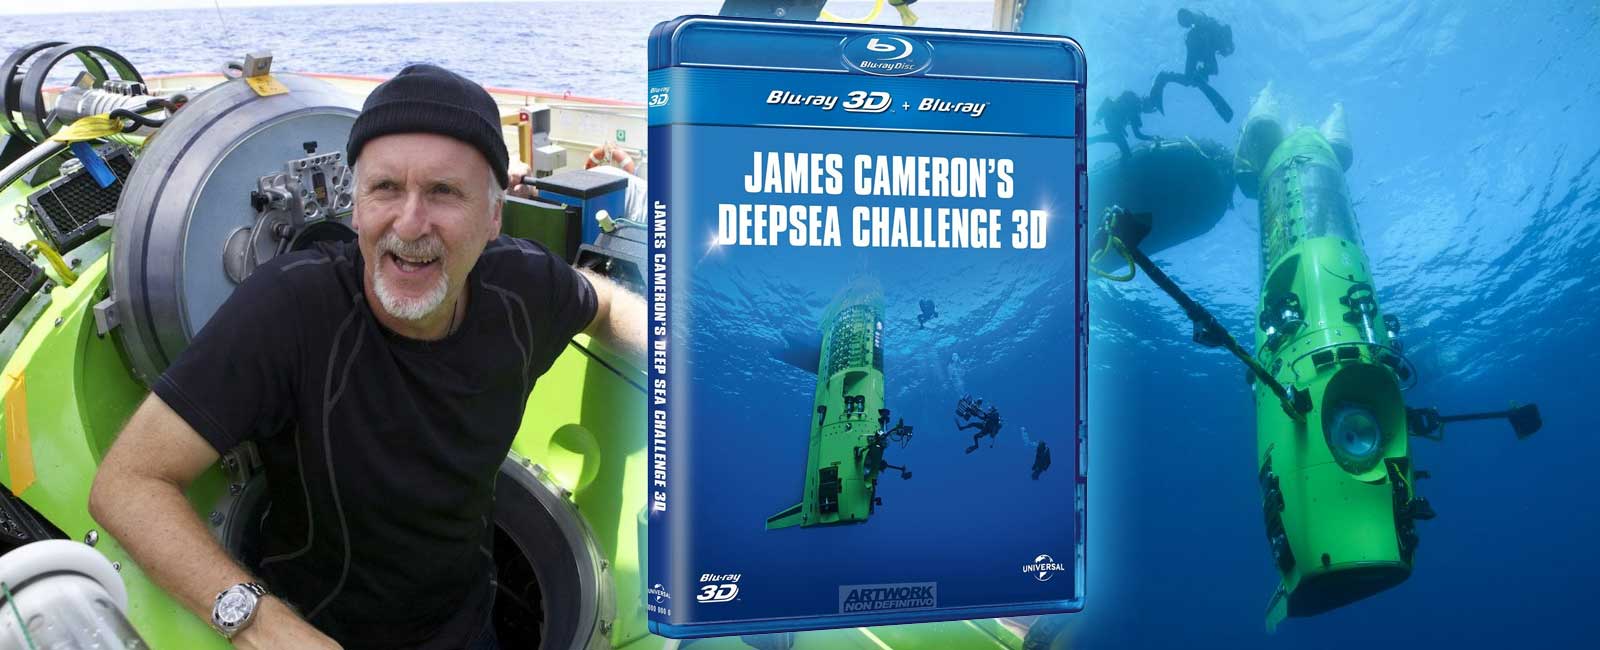 Blu-ray 3D di James Cameron's Deep Sea Challenge